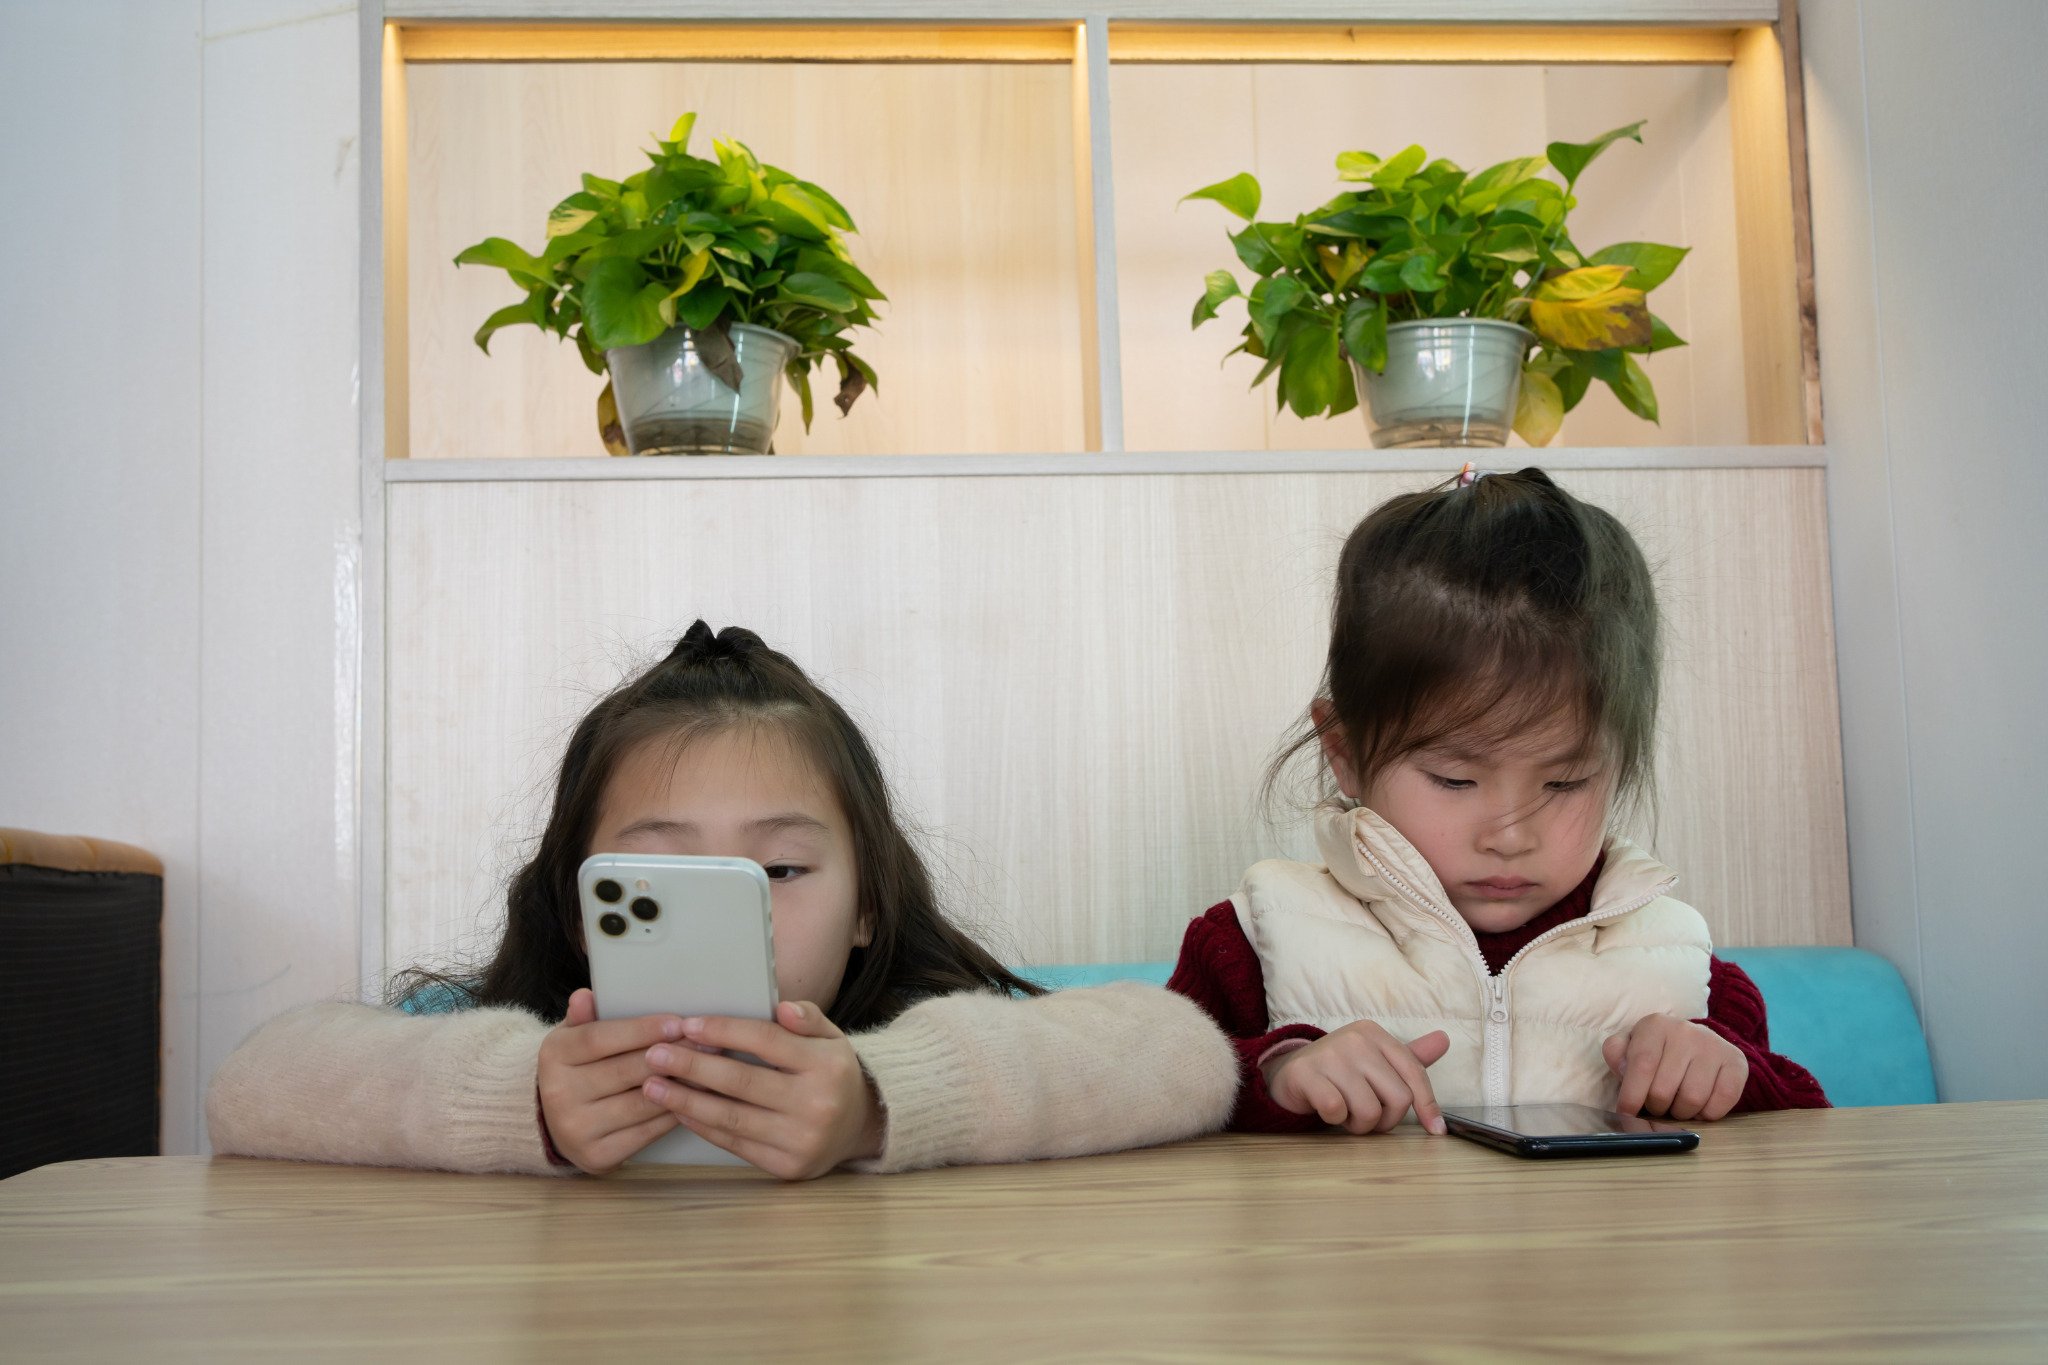  Trẻ có thể chơi điện thoại trong thời gian dài, với tư thế cúi đầu hàng giờ có thể gây tổn thương cho đốt sống cổ và cơ lưng (Ảnh minh hoạ)